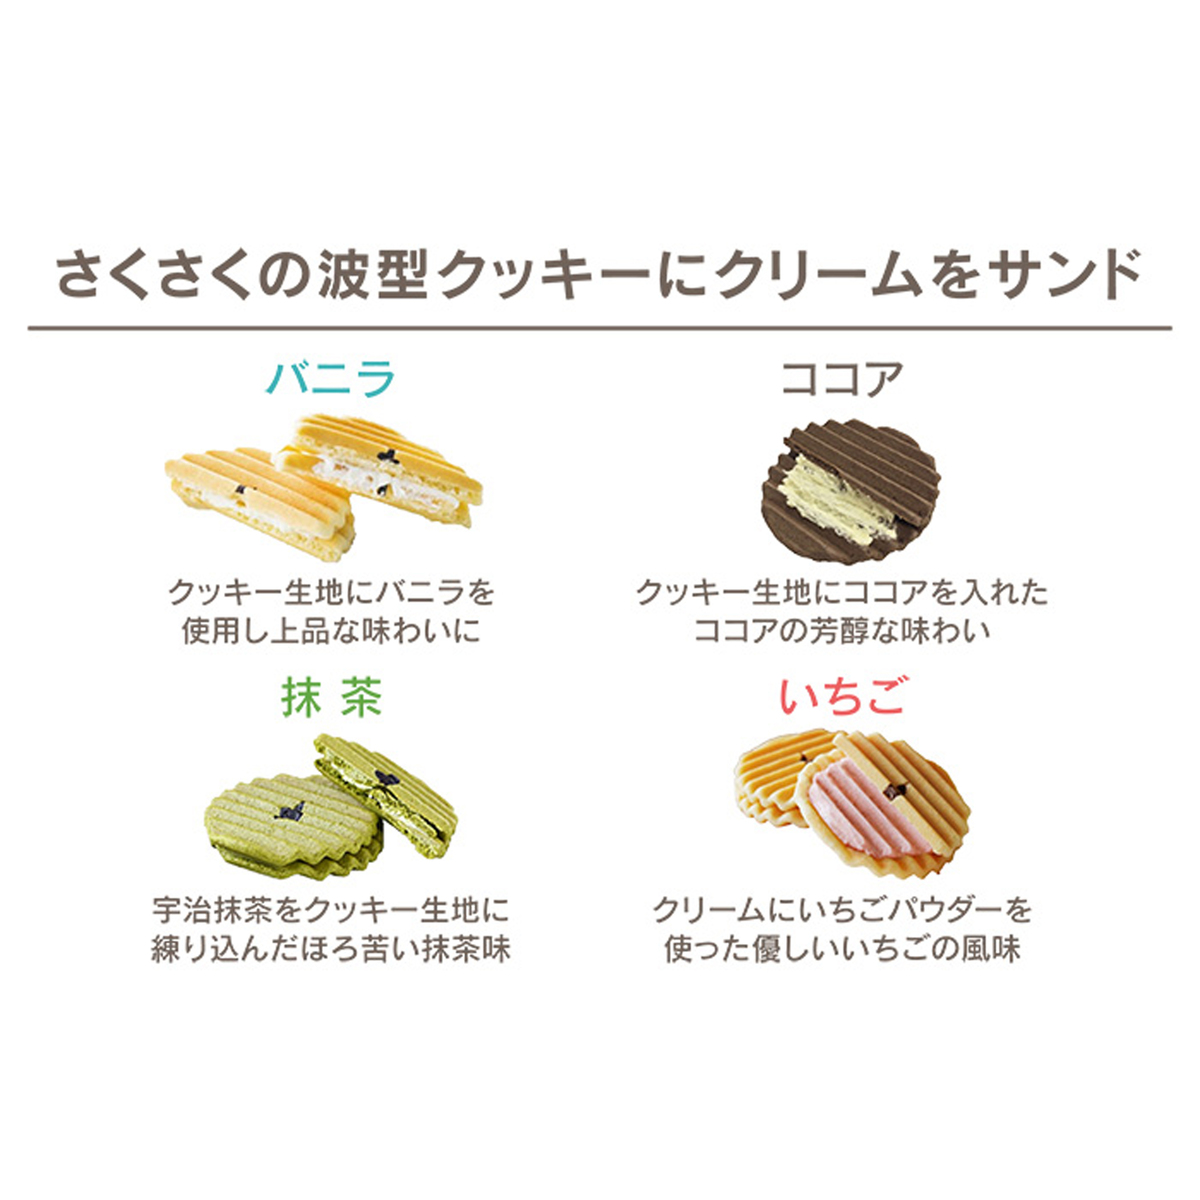 京寿楽庵 波型クッキーサンド「ヴァッフェル」4種20枚 京寿楽庵 - QVC.jp